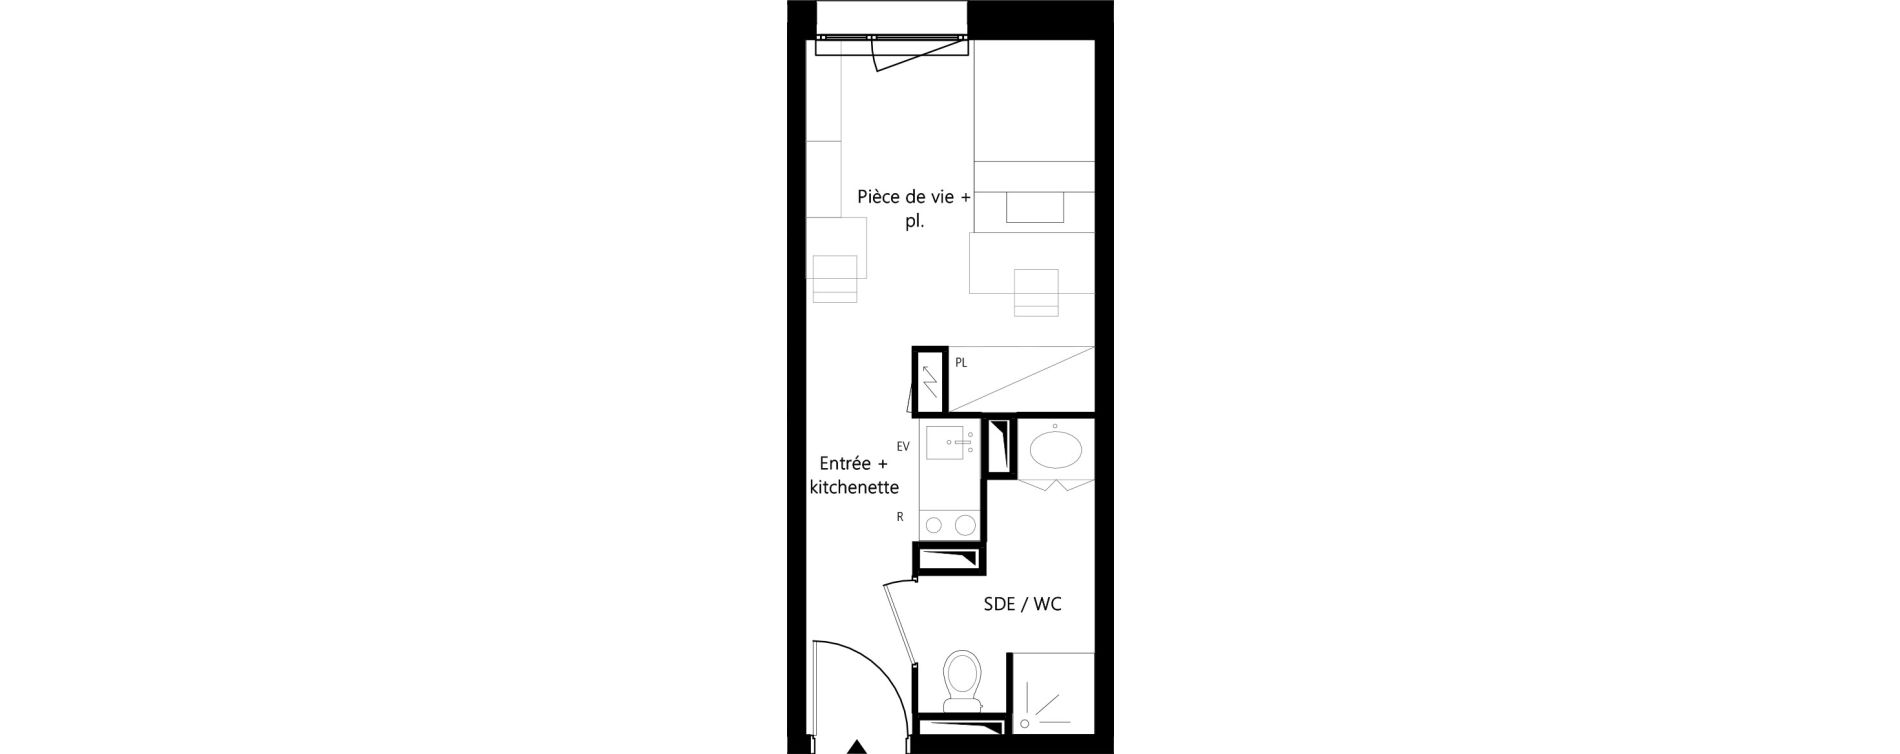 Appartement T1 meubl&eacute; de 18,35 m2 &agrave; Montauban Villebourbon - gare